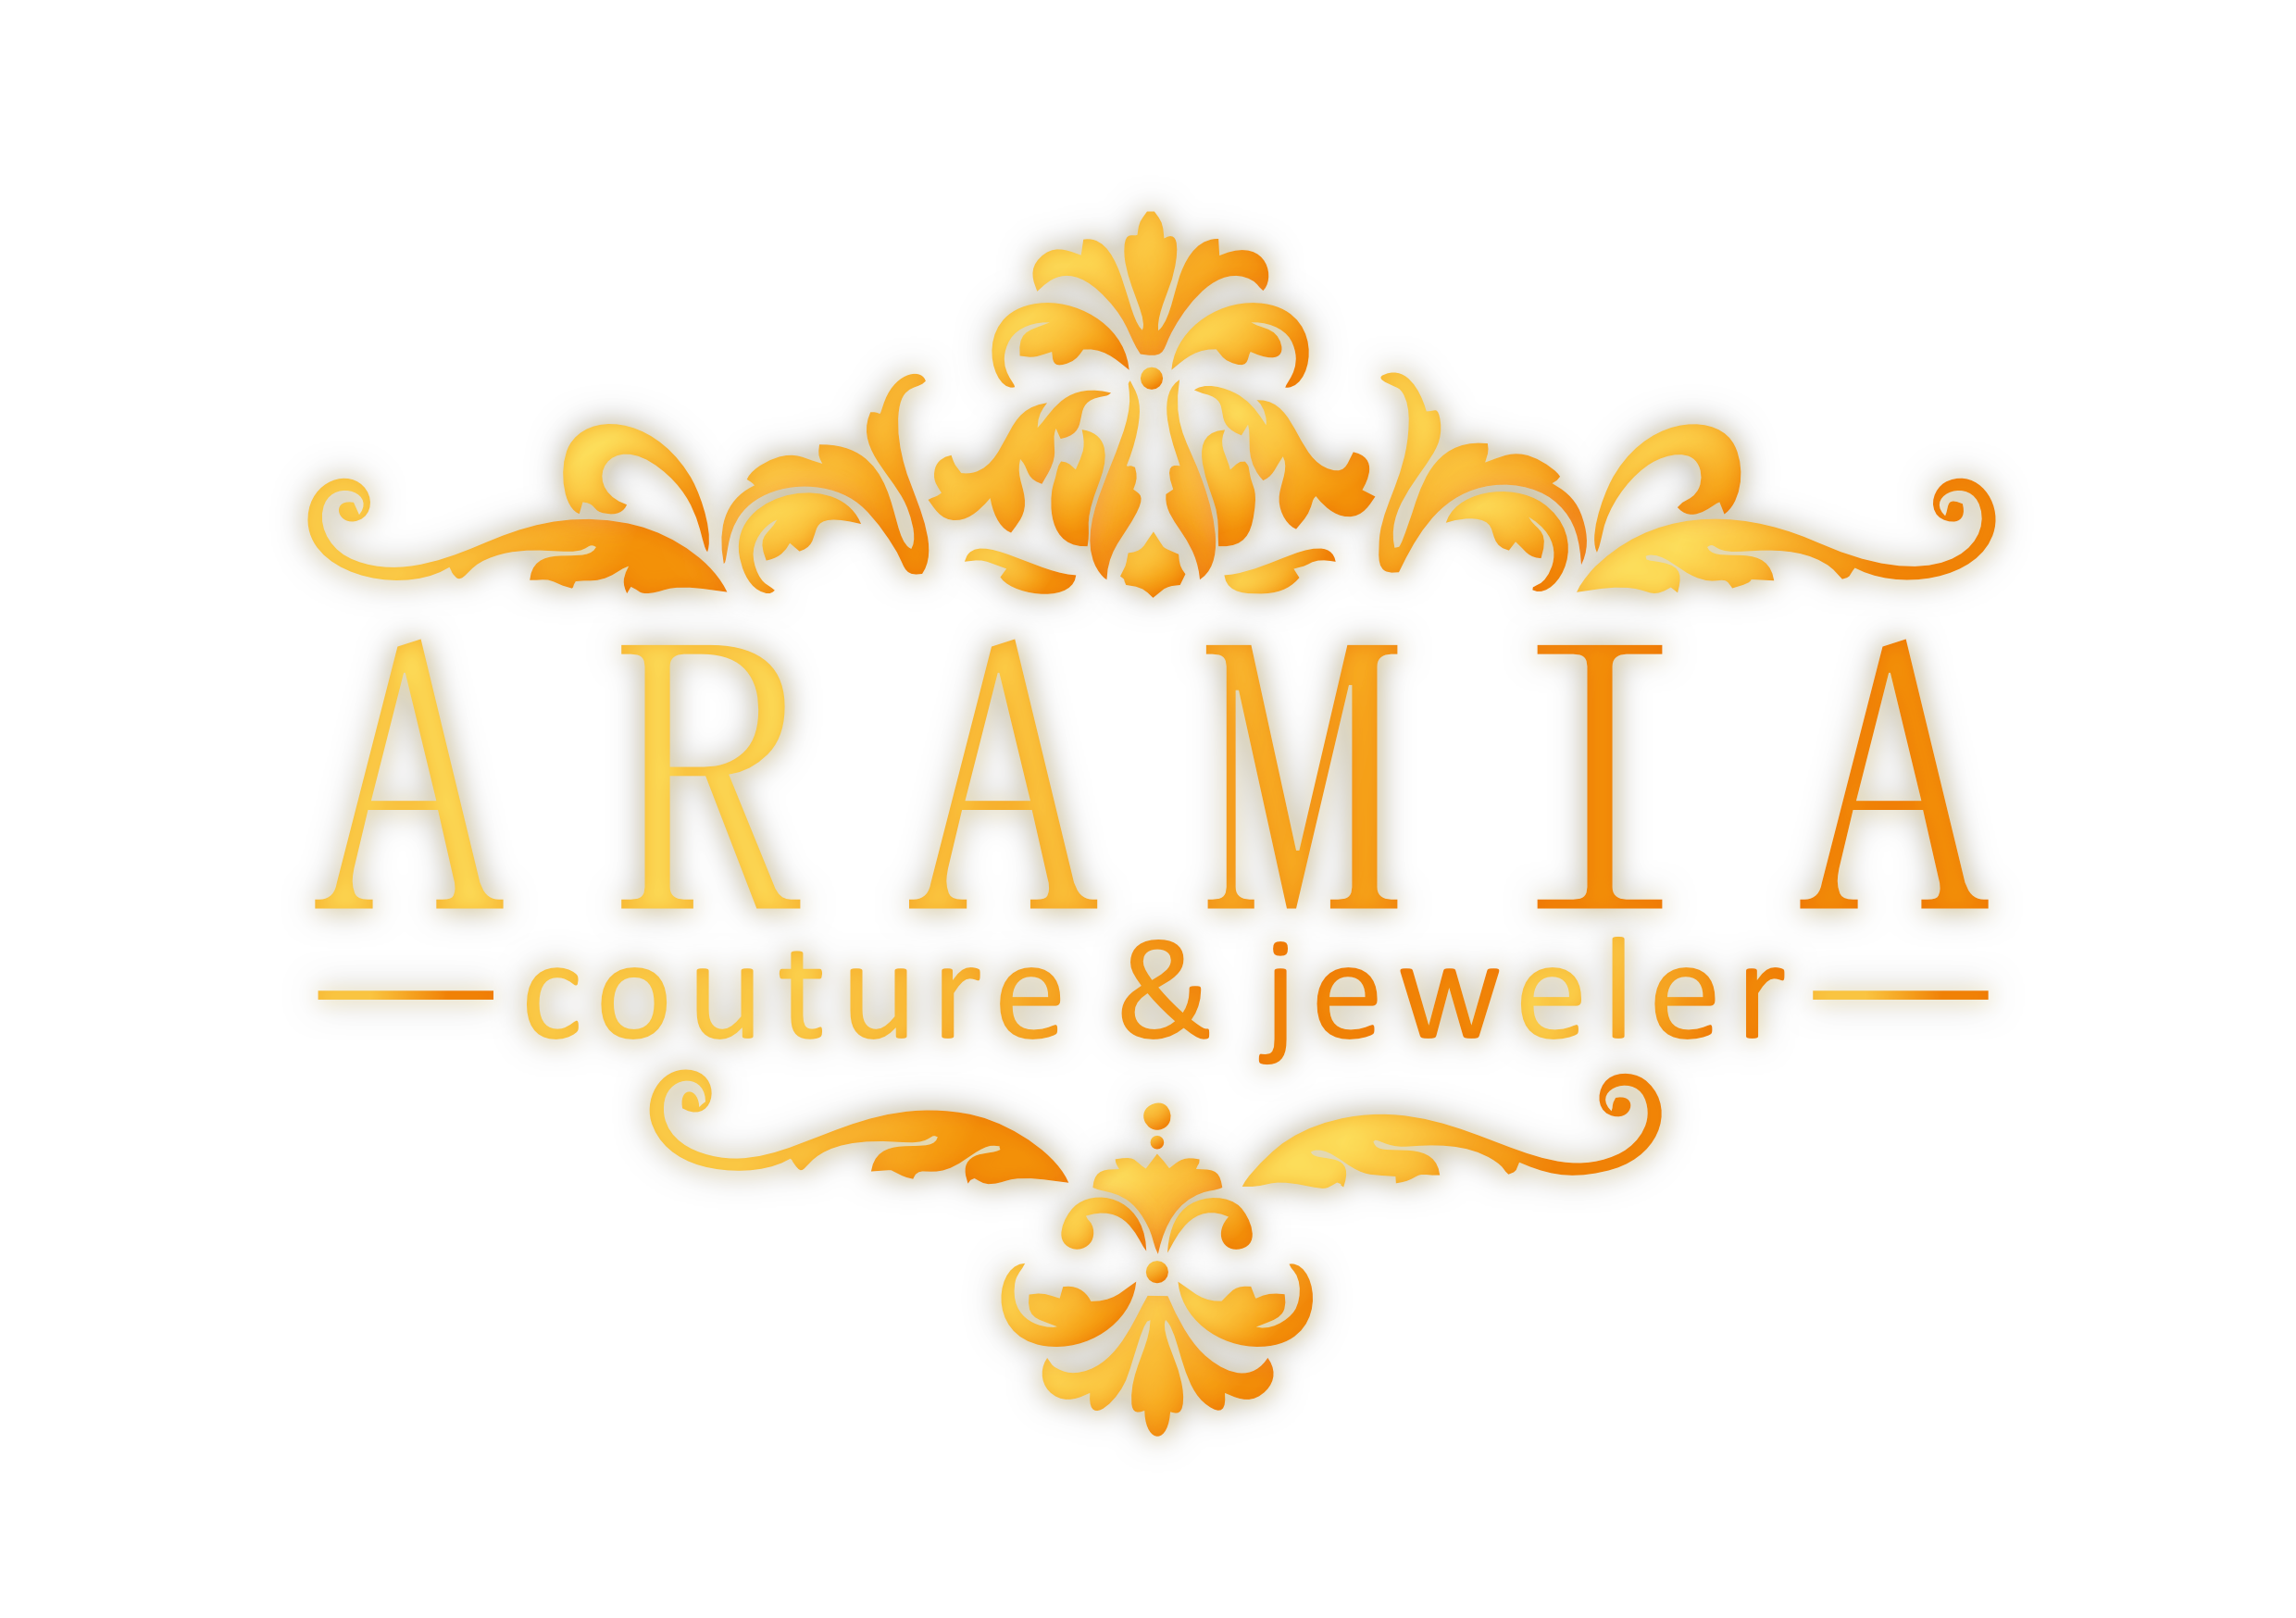 Aramia Couture & Jeweler